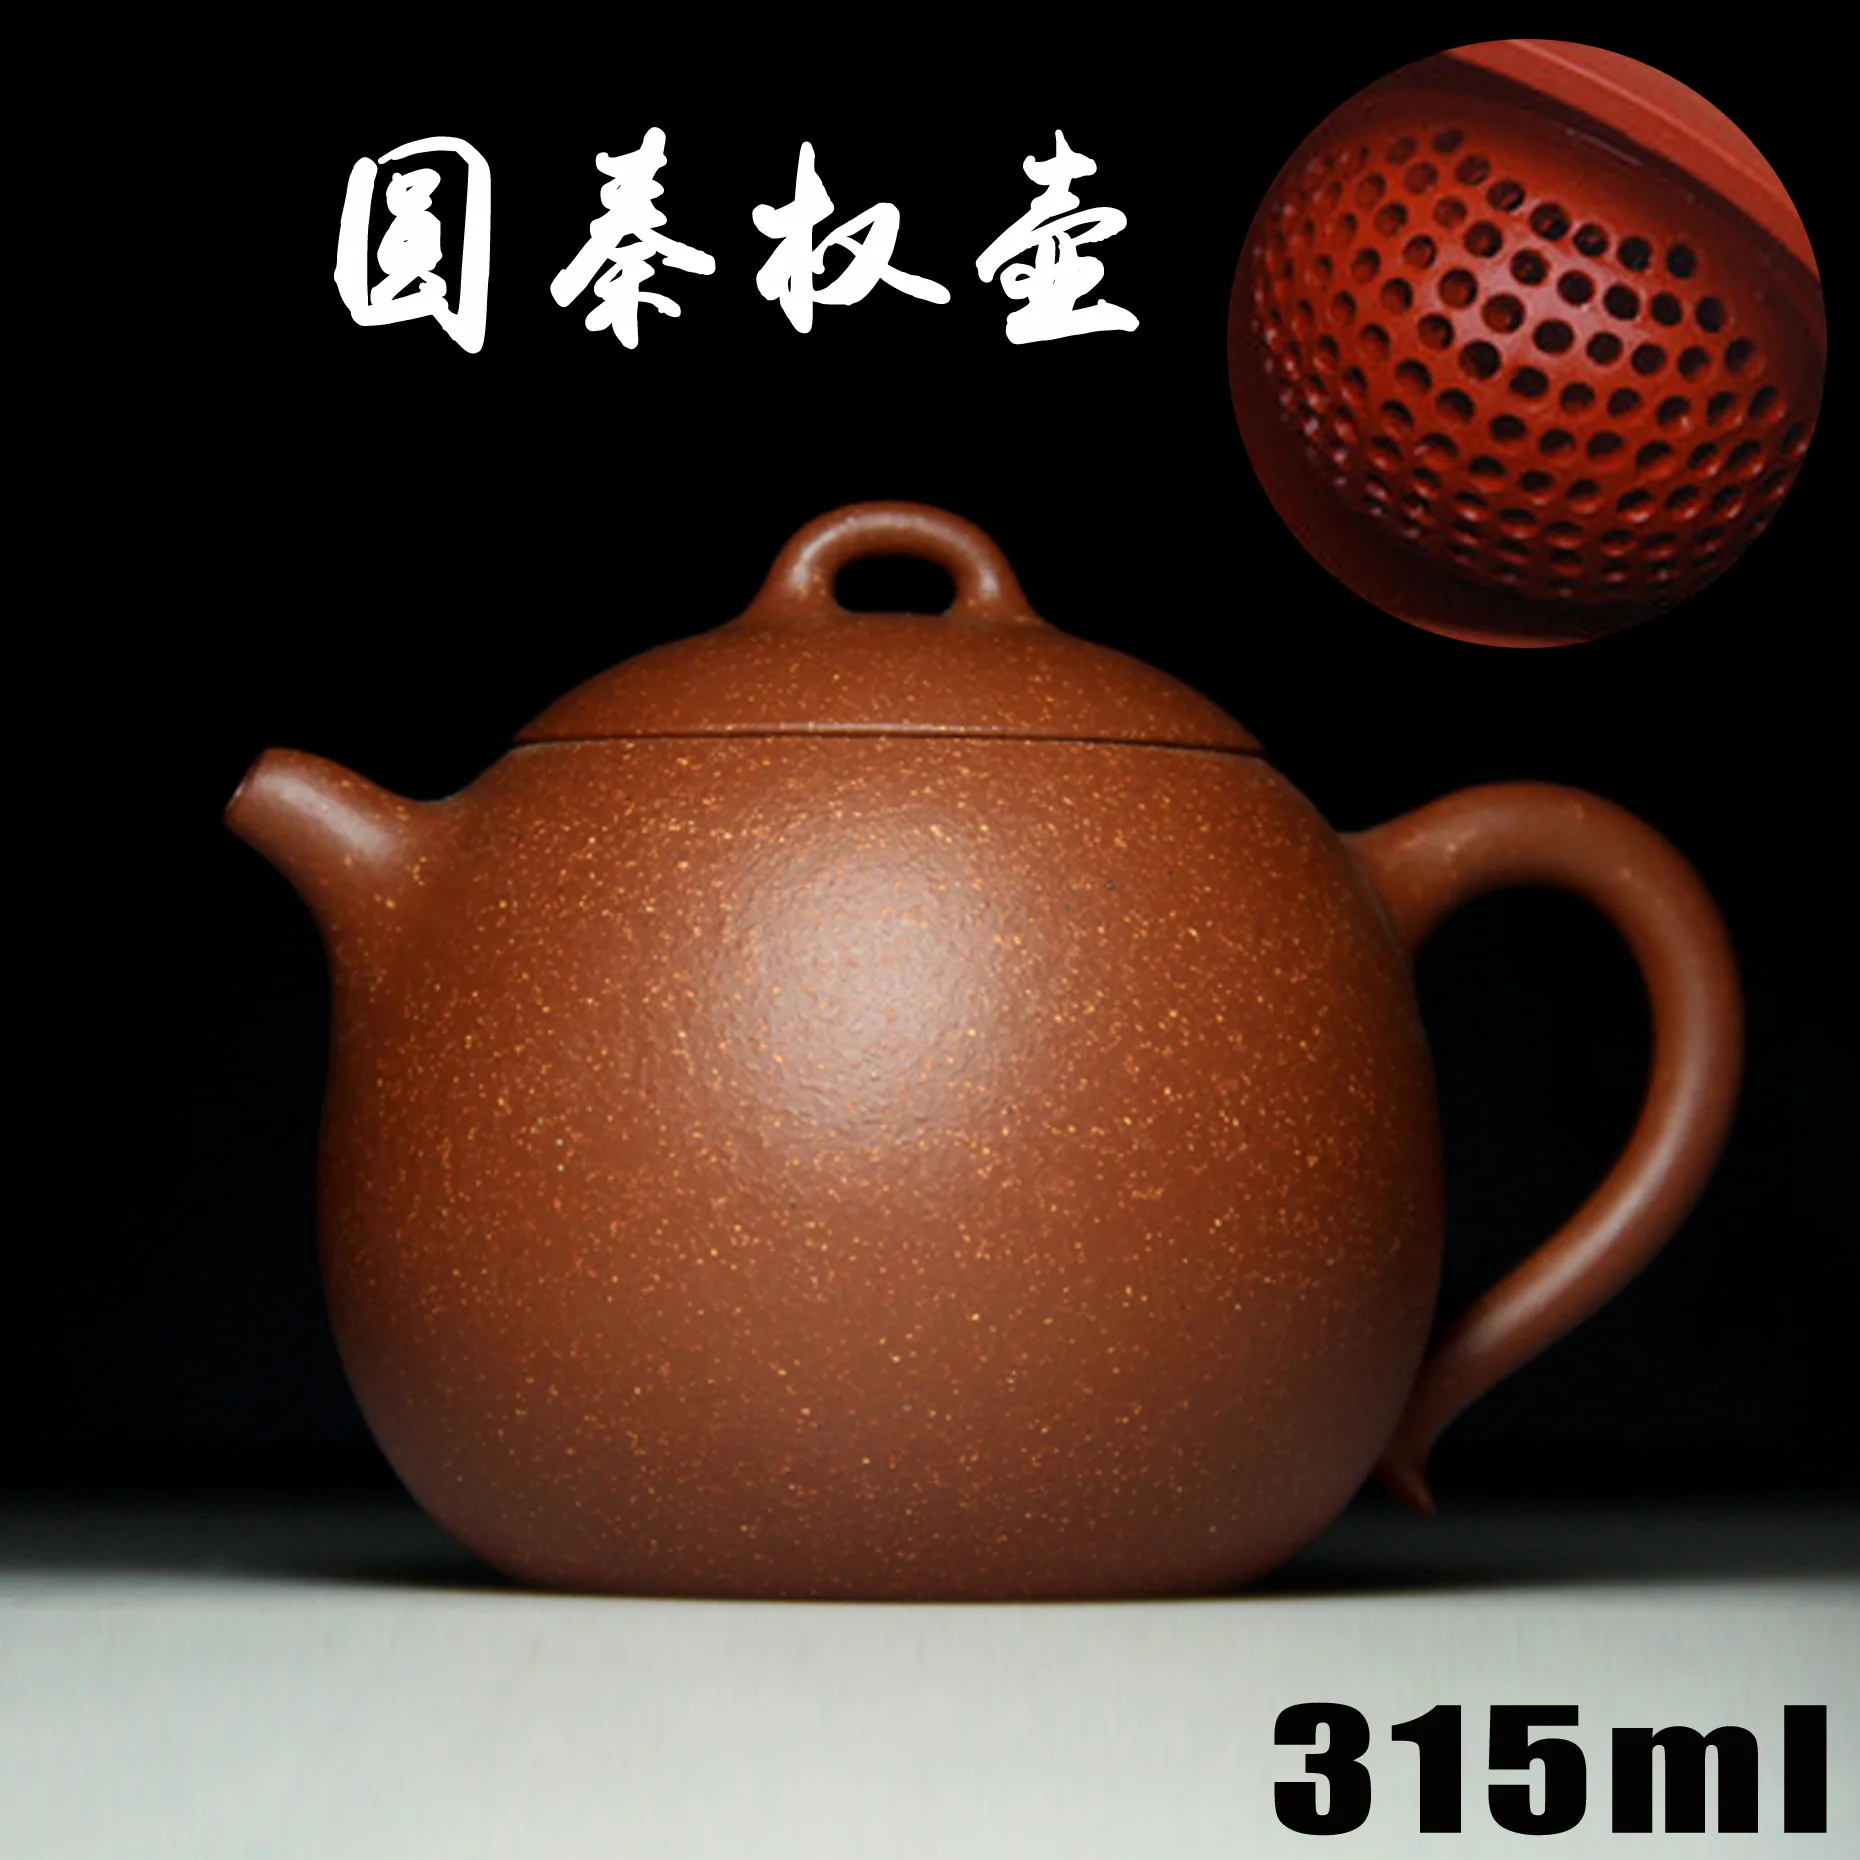 Аутентичные Исин Zisha мастеров ручной работы чайник руды склон грязи круглый qinquan горшок опт и розница 321